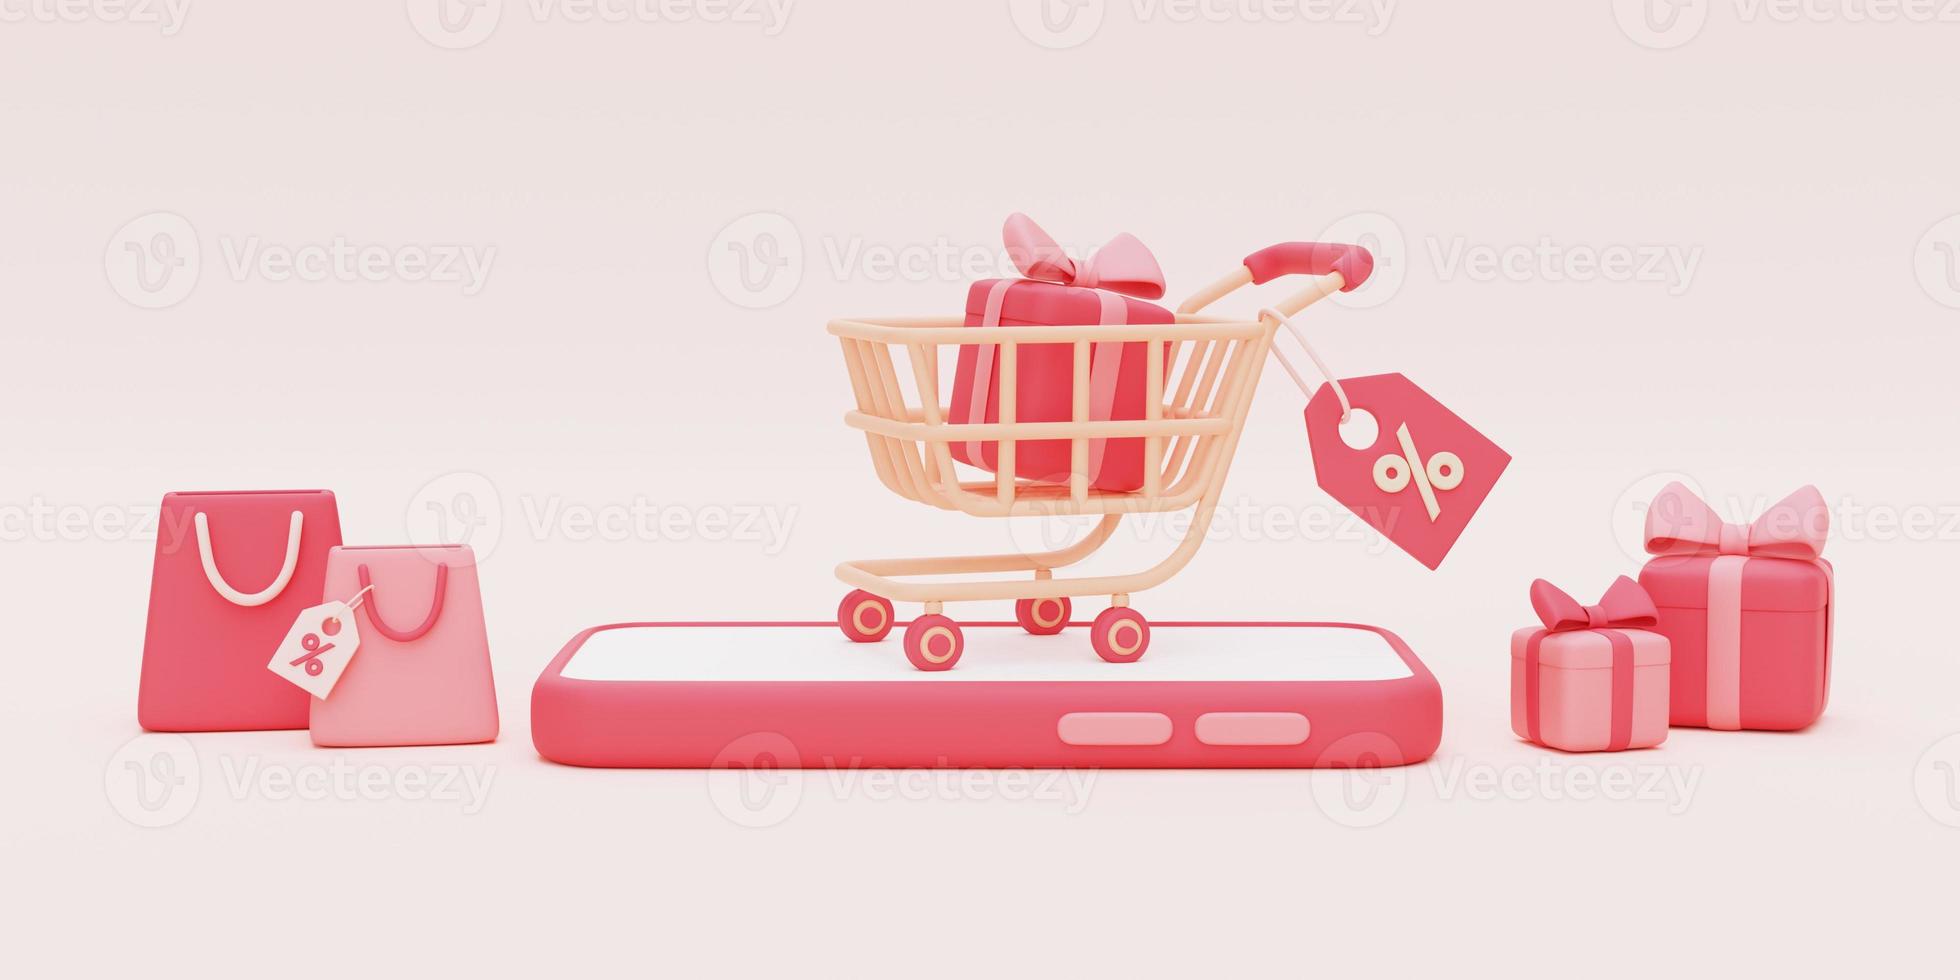 Render 3d de carrito de compras rosa con cajas de regalo y bolsa de compras sobre fondo pastel, concepto de venta del día de san valentín, estilo minimalista. foto